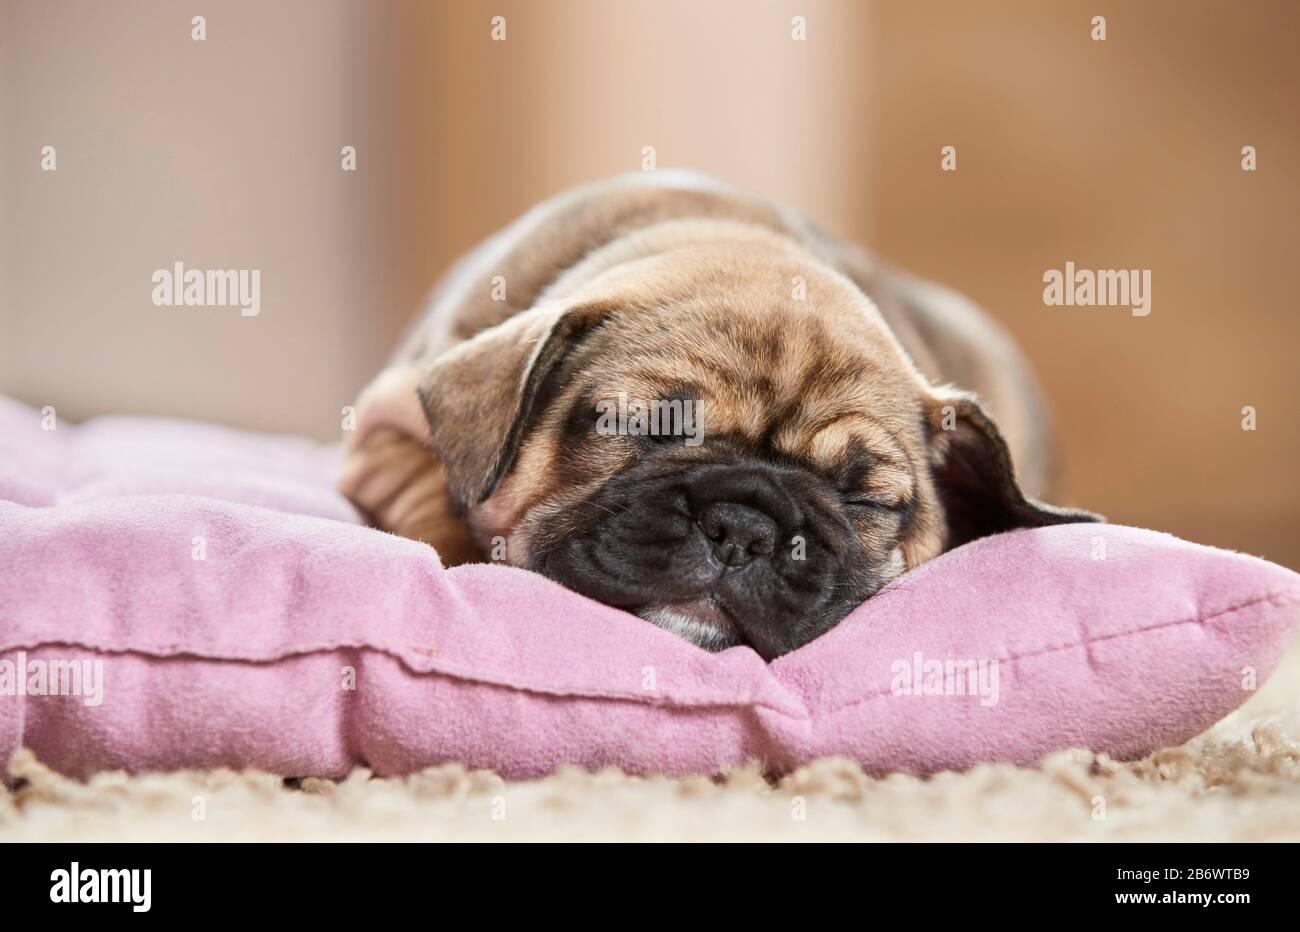 Bulldog français. Chiot dormant sur un lit d'animal de compagnie. Allemagne Banque D'Images